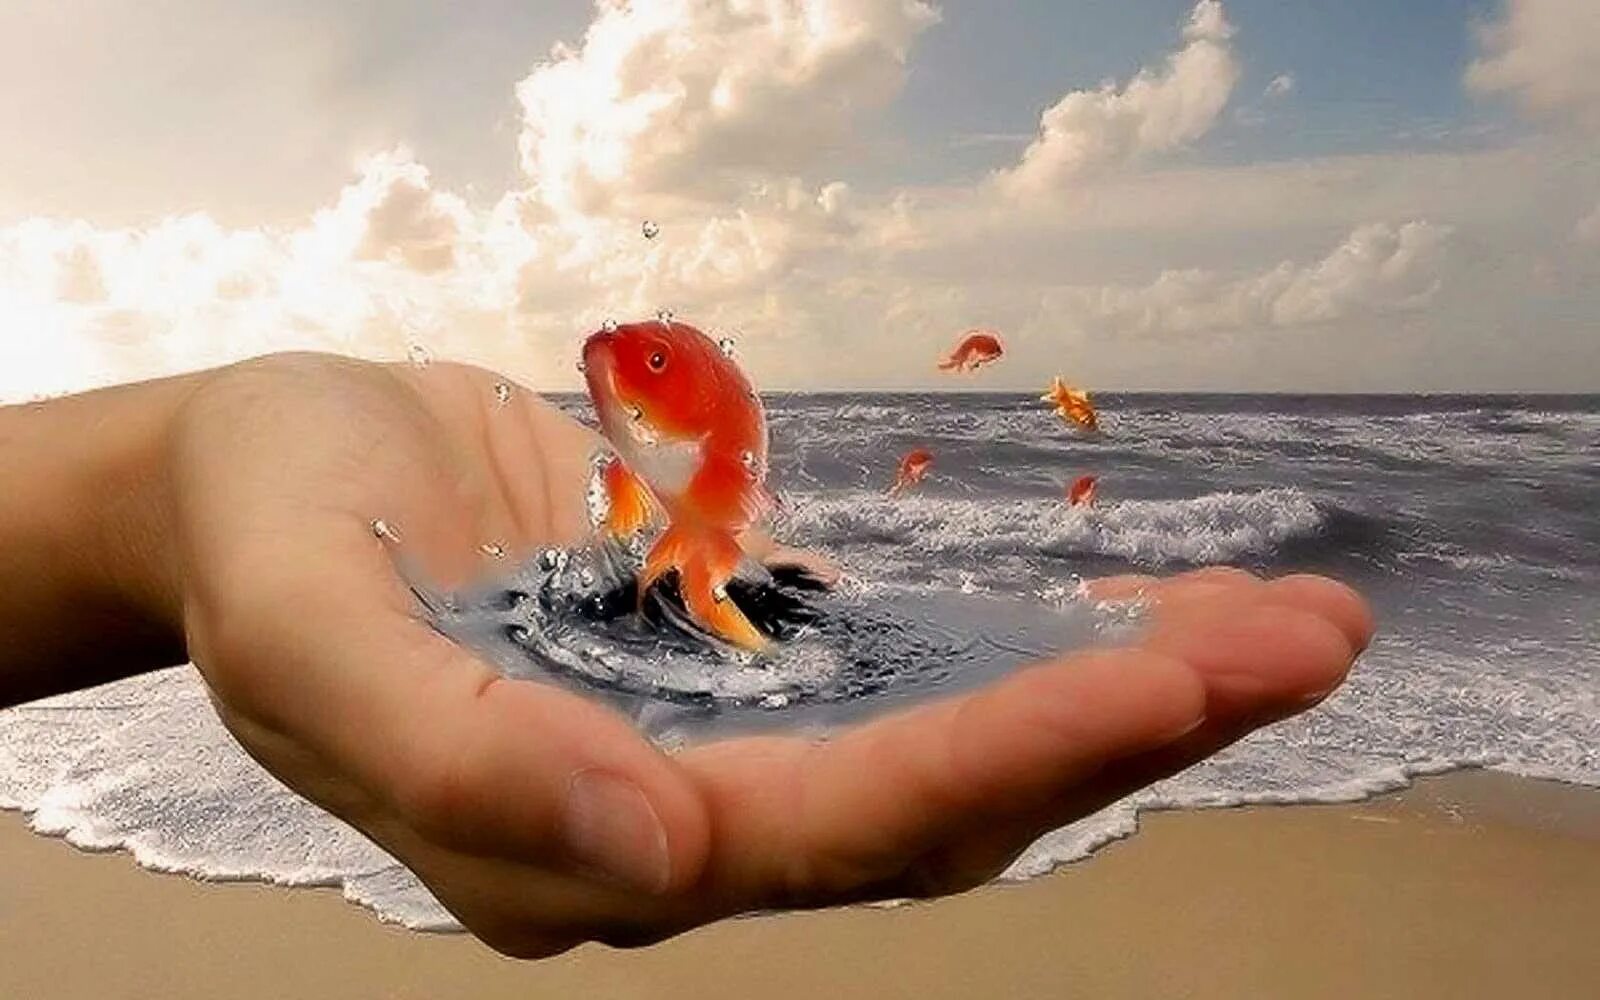 Отвага души. Золотая рыбка в руках. Золотая рыбка исполняет желания. Исполнения всех желаний. Добро у моря.